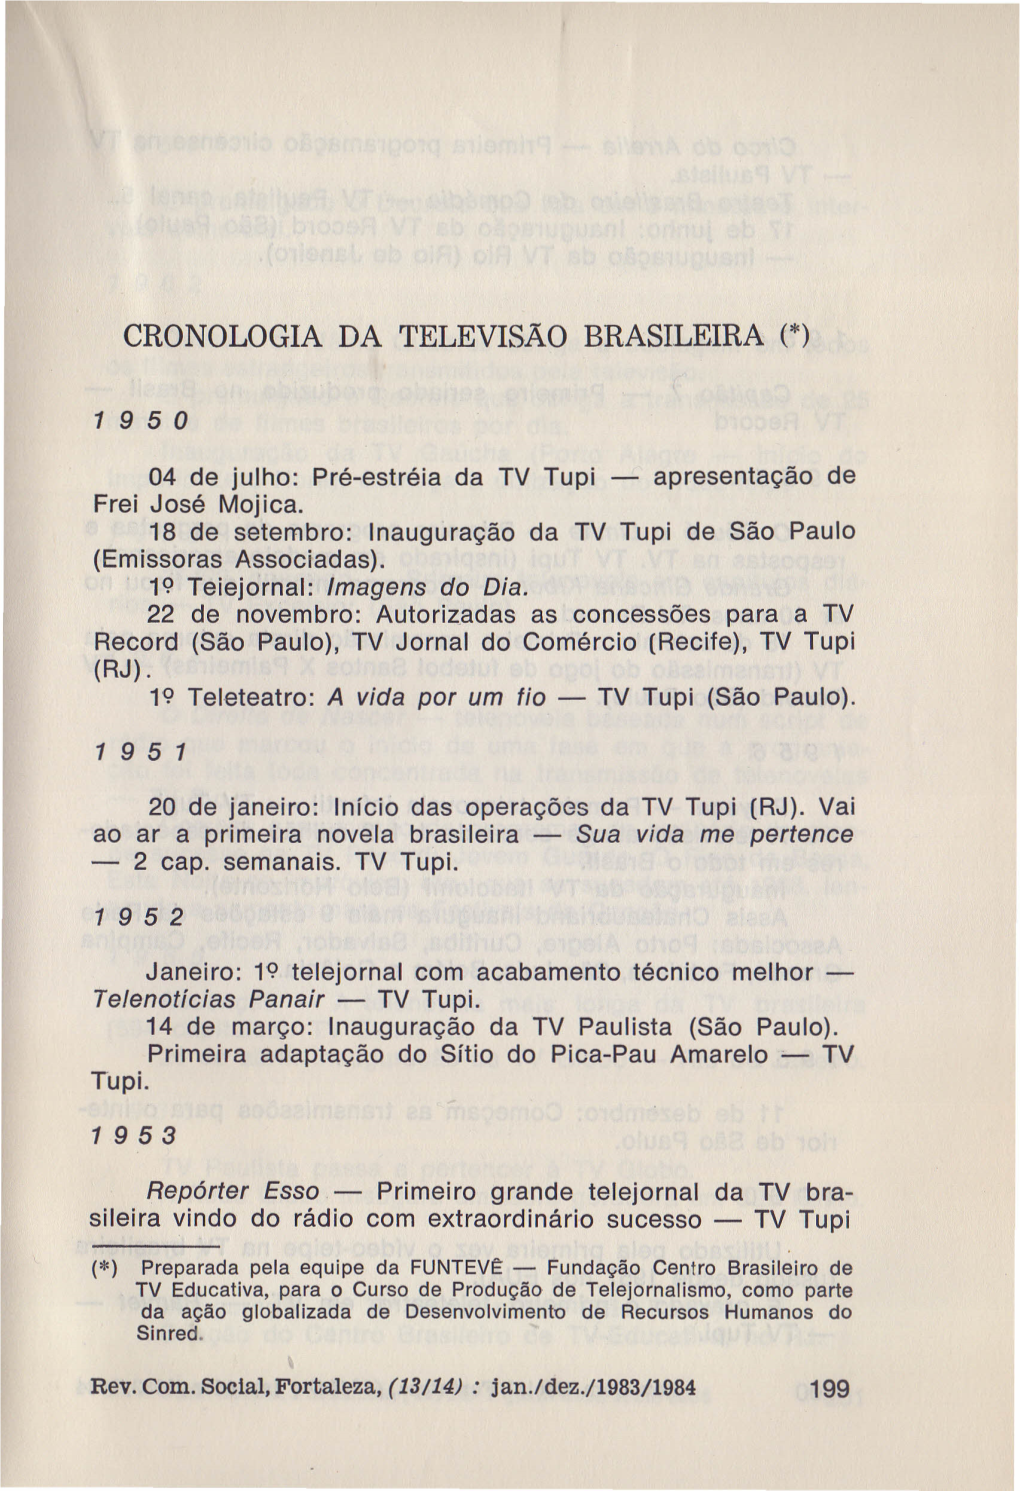 Cronologia Da Televisão Brasileira (*)